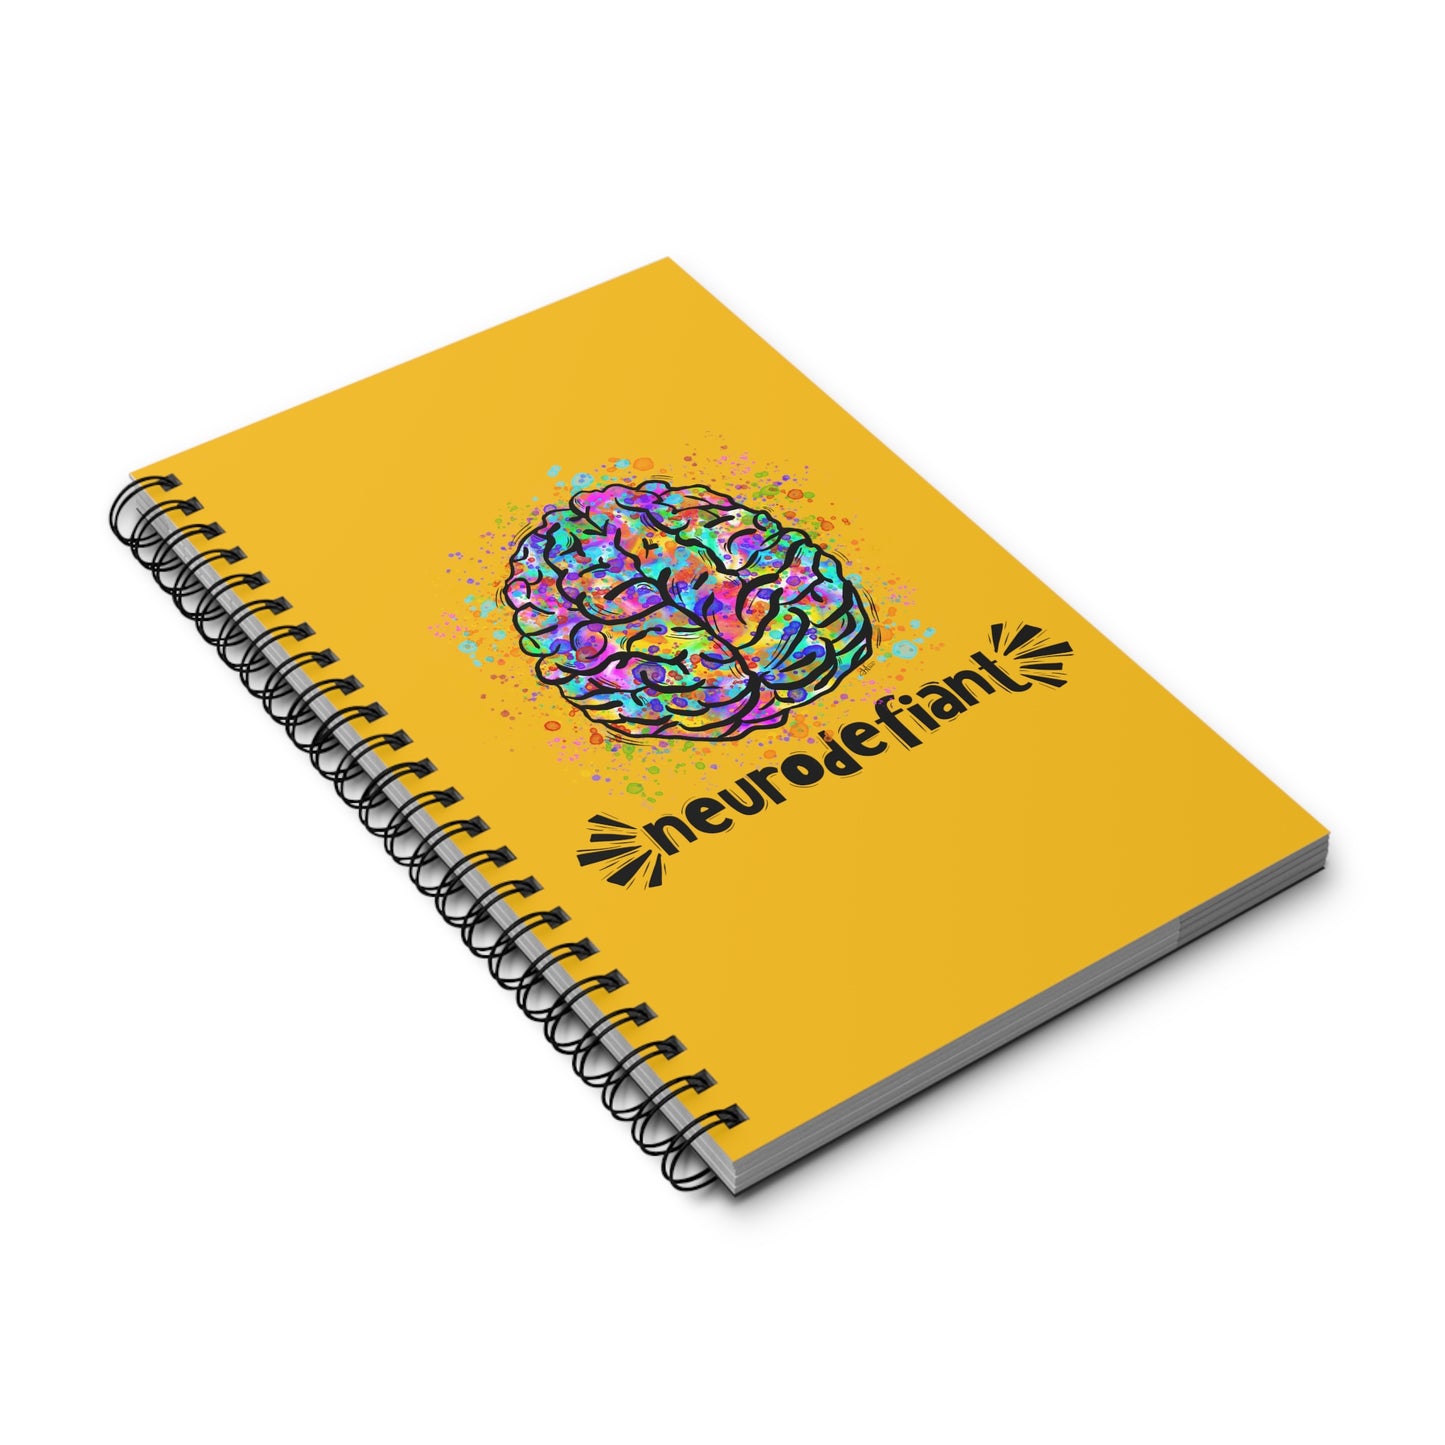 NeuroDefiant - Spiral Journal (Gold)